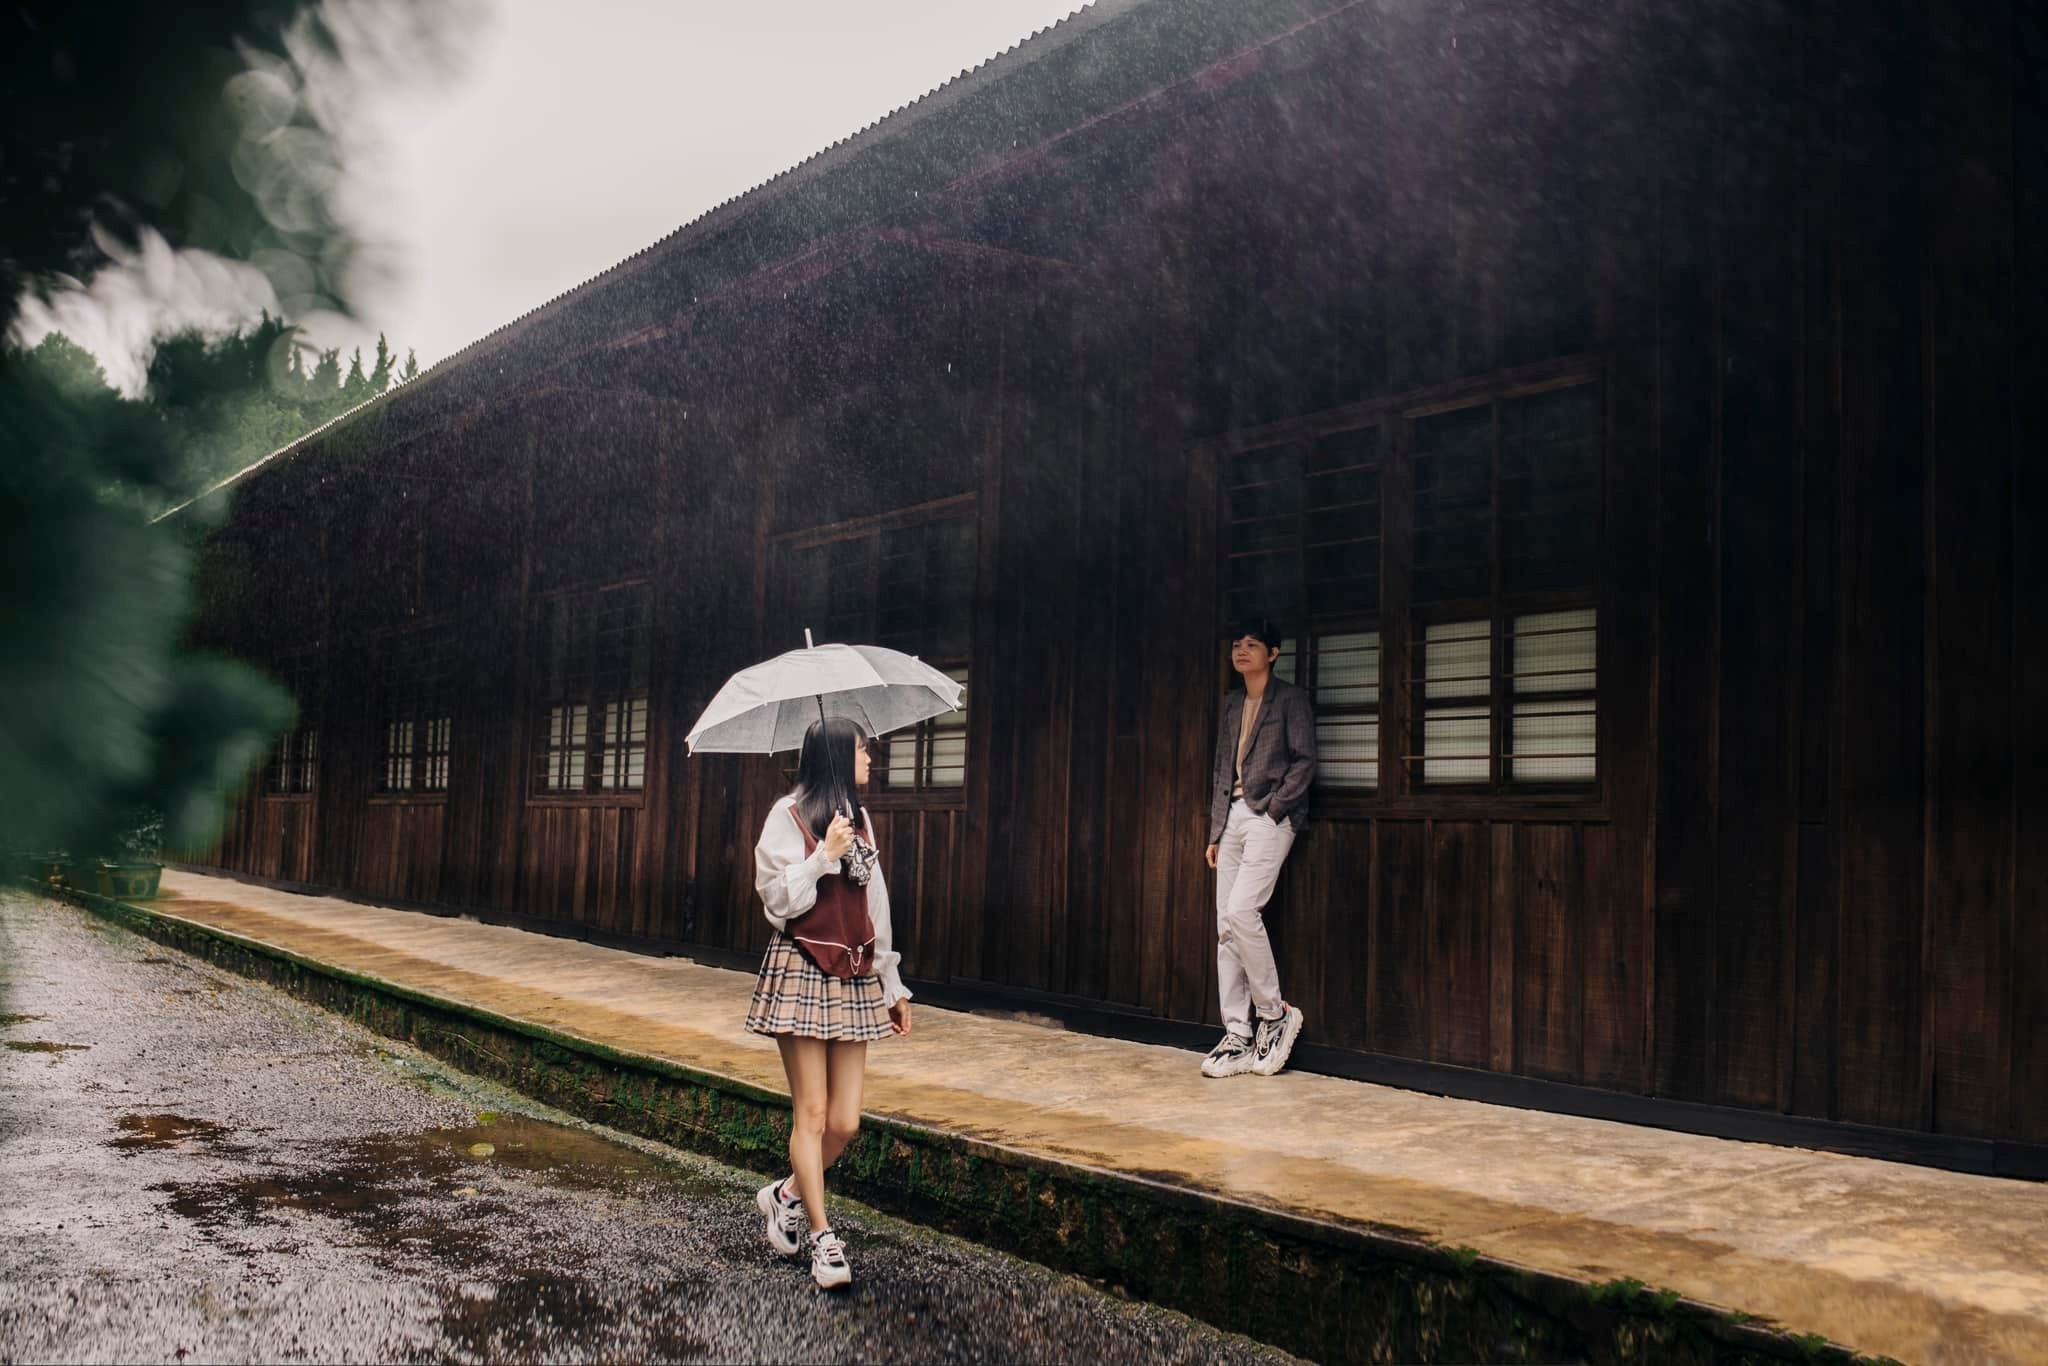 Du lịch Đà Lạt mùa mưa: Bí quyết tận hưởng vẻ đẹp lãng mạn của thành phố sương mù